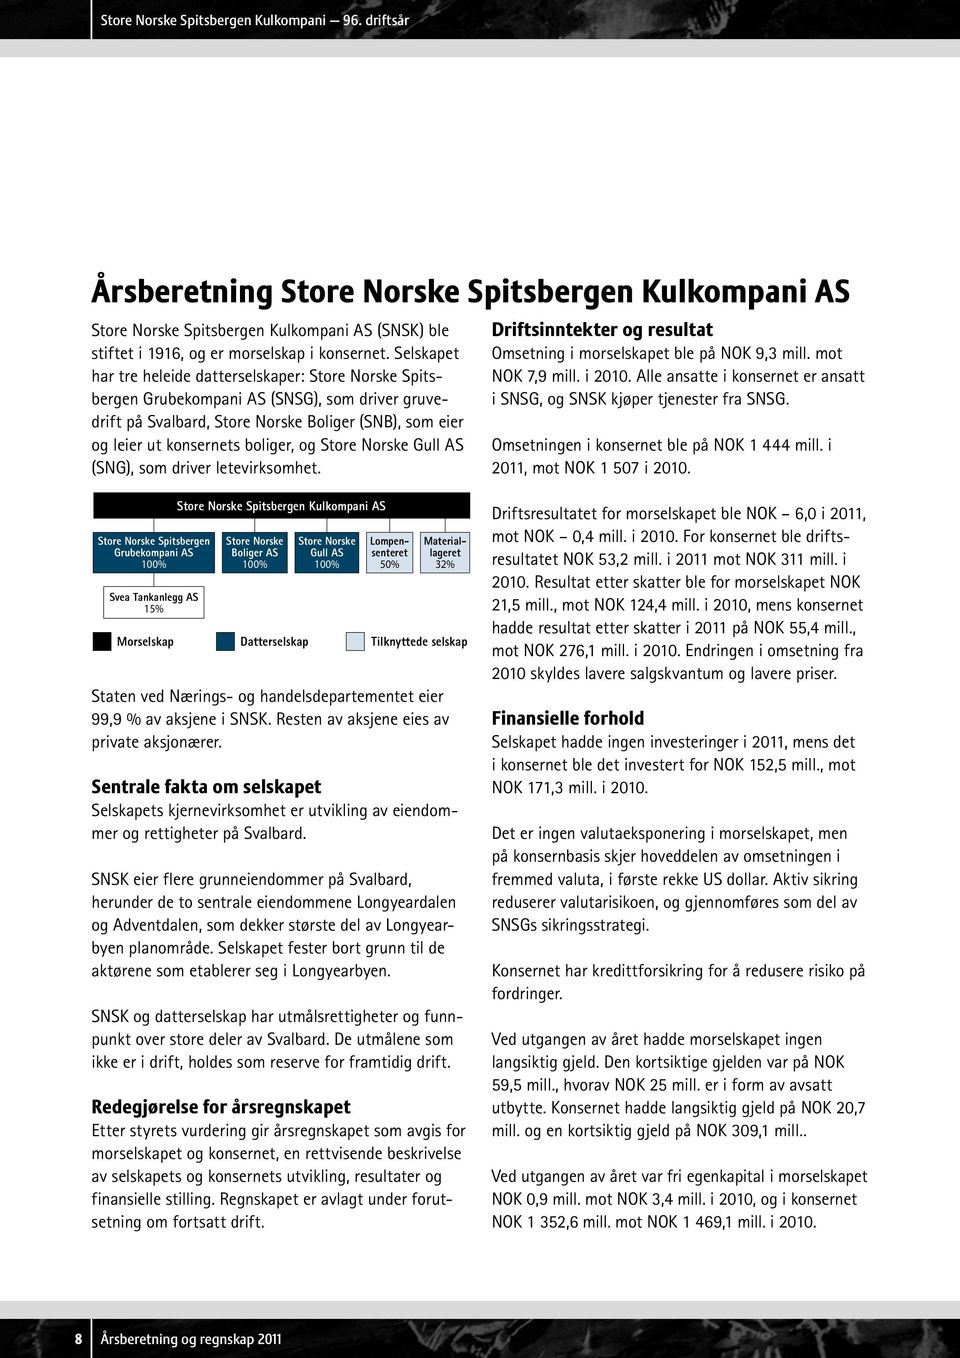 Store Norske Gull AS (SNG), som driver letevirksomhet. Driftsinntekter og resultat Omsetning i morselskapet ble på NOK 9,3 mill. mot NOK 7,9 mill. i 2010.